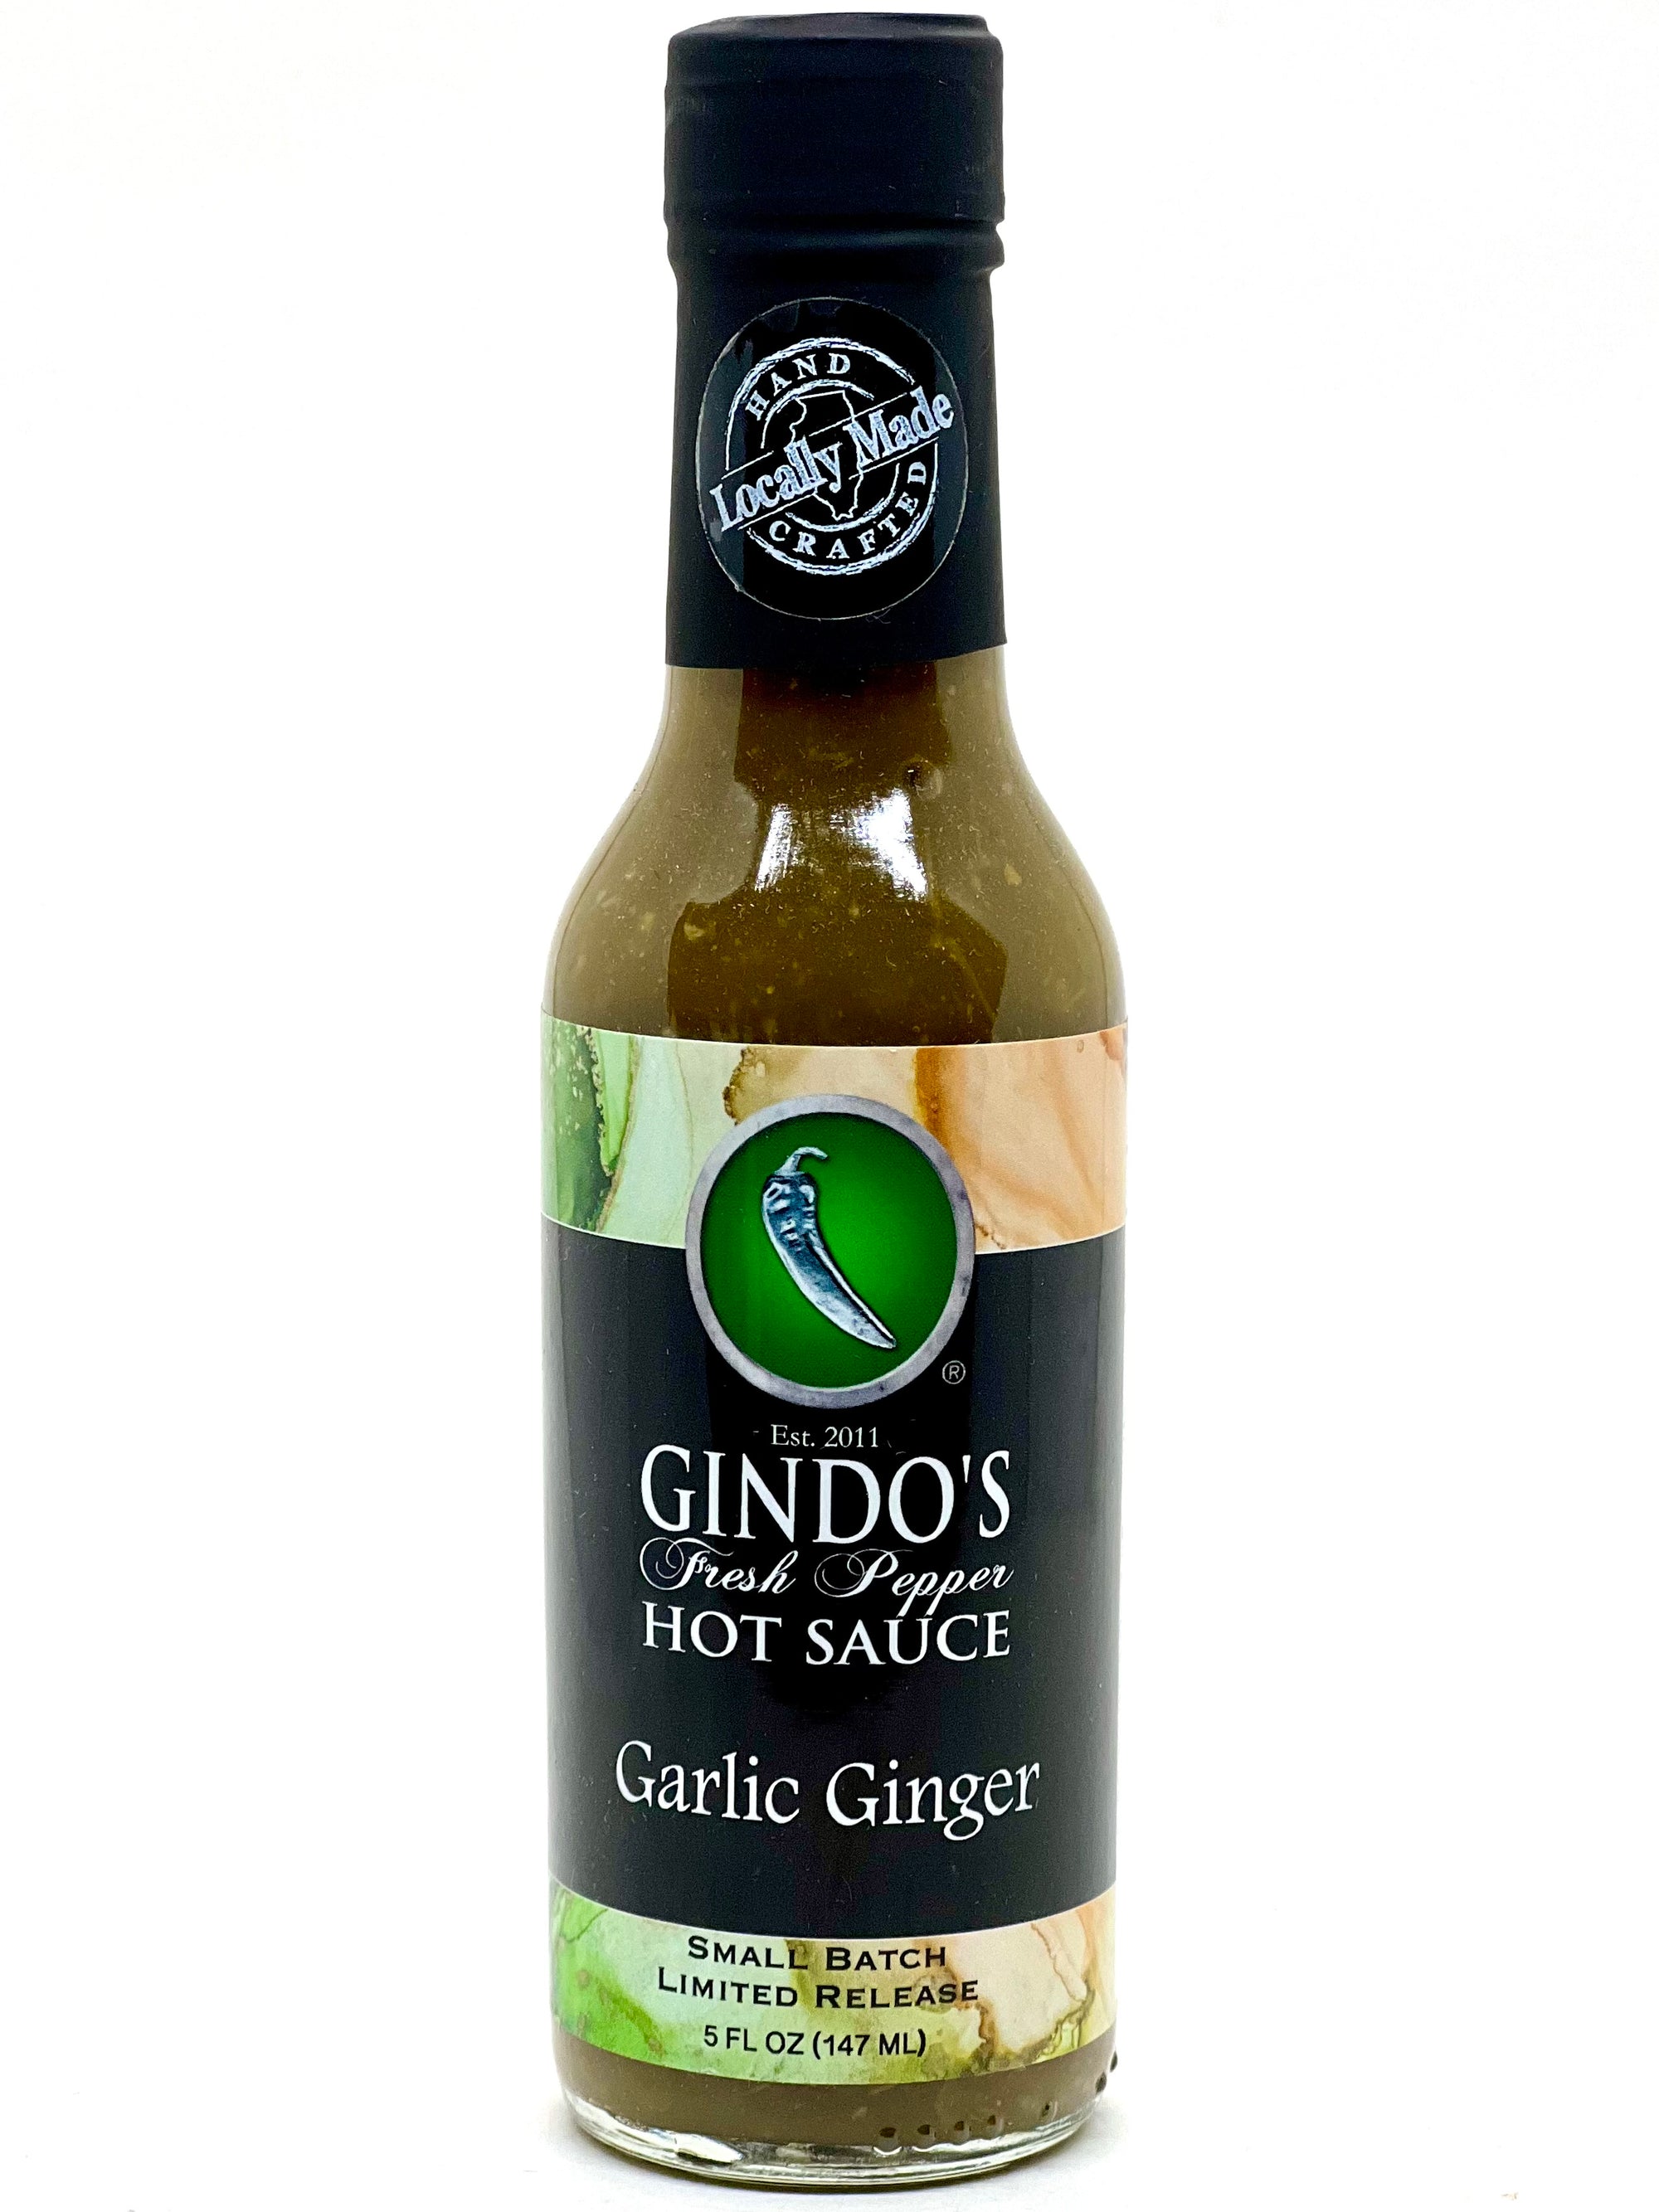 Garlic Ginger Hot Sauce